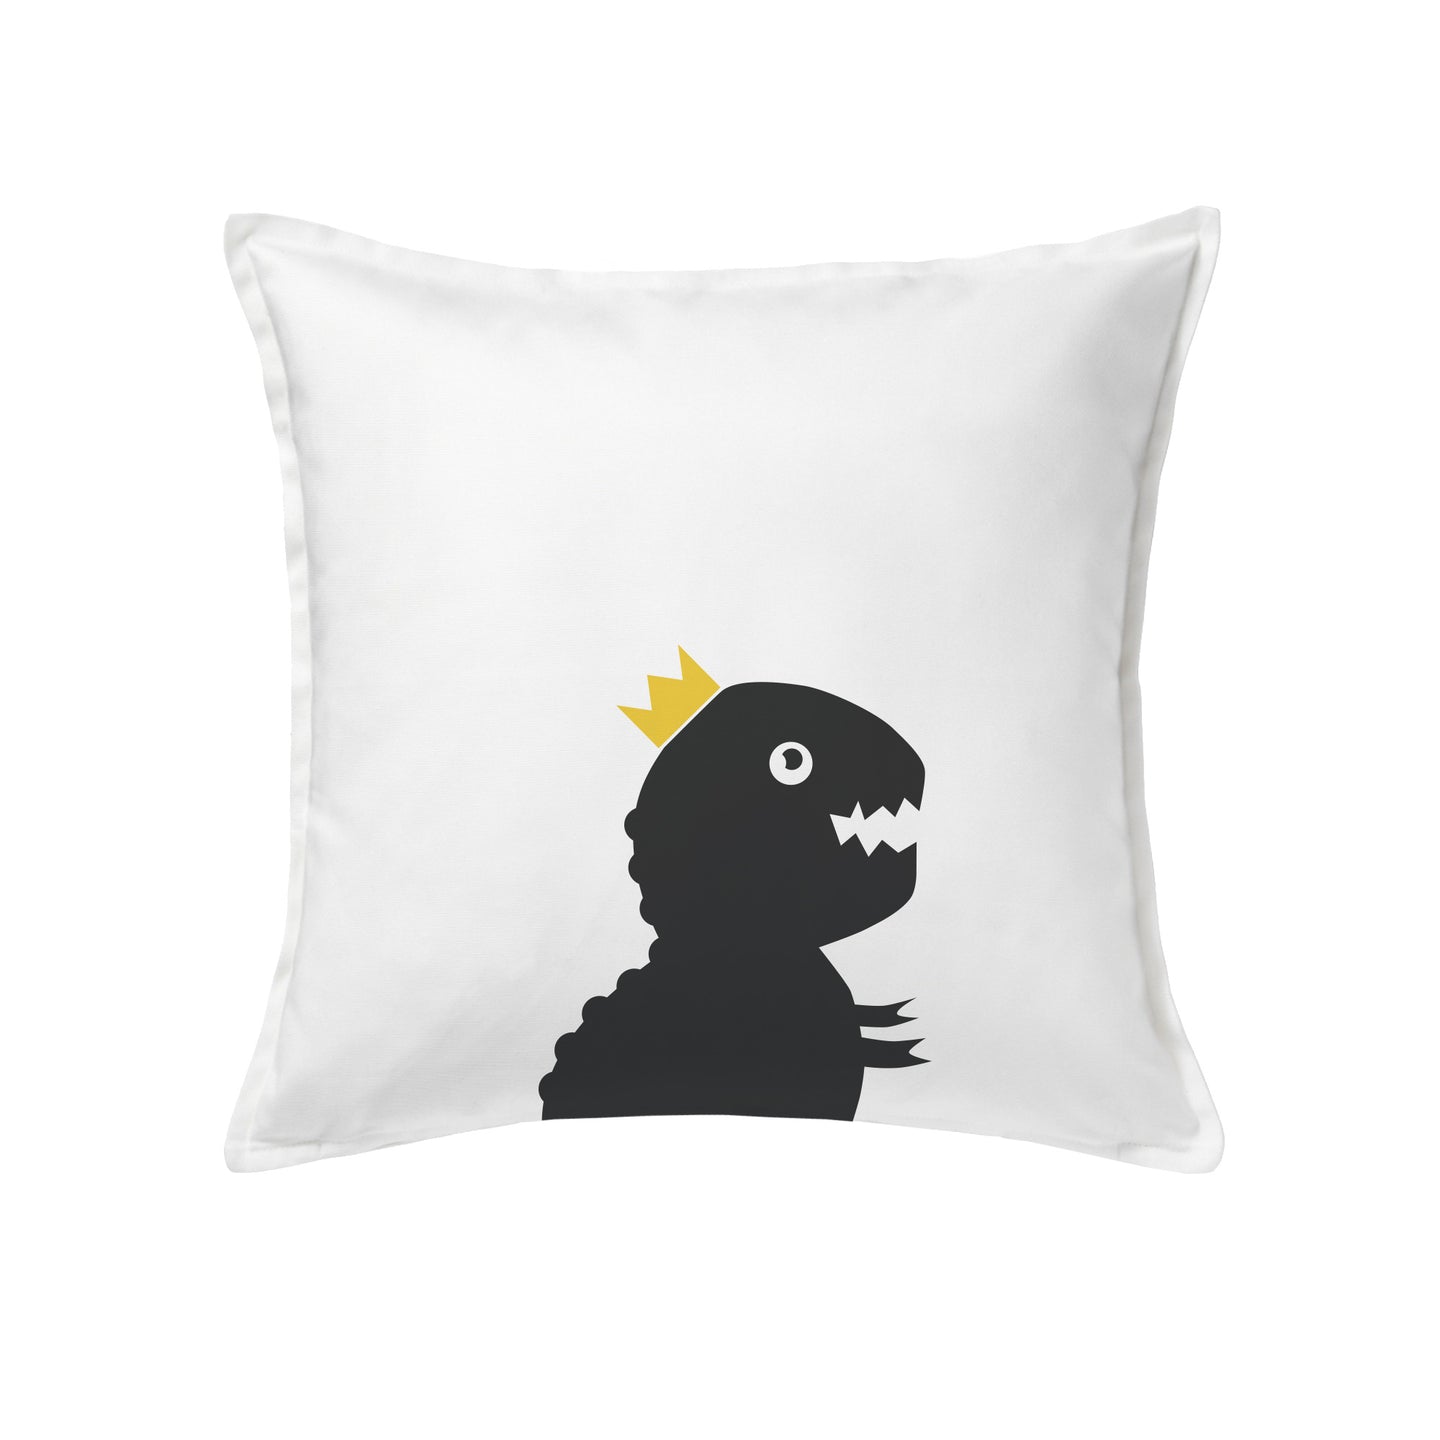 T-Rex Dinosaur cushion or cover 50x50cm (20x20